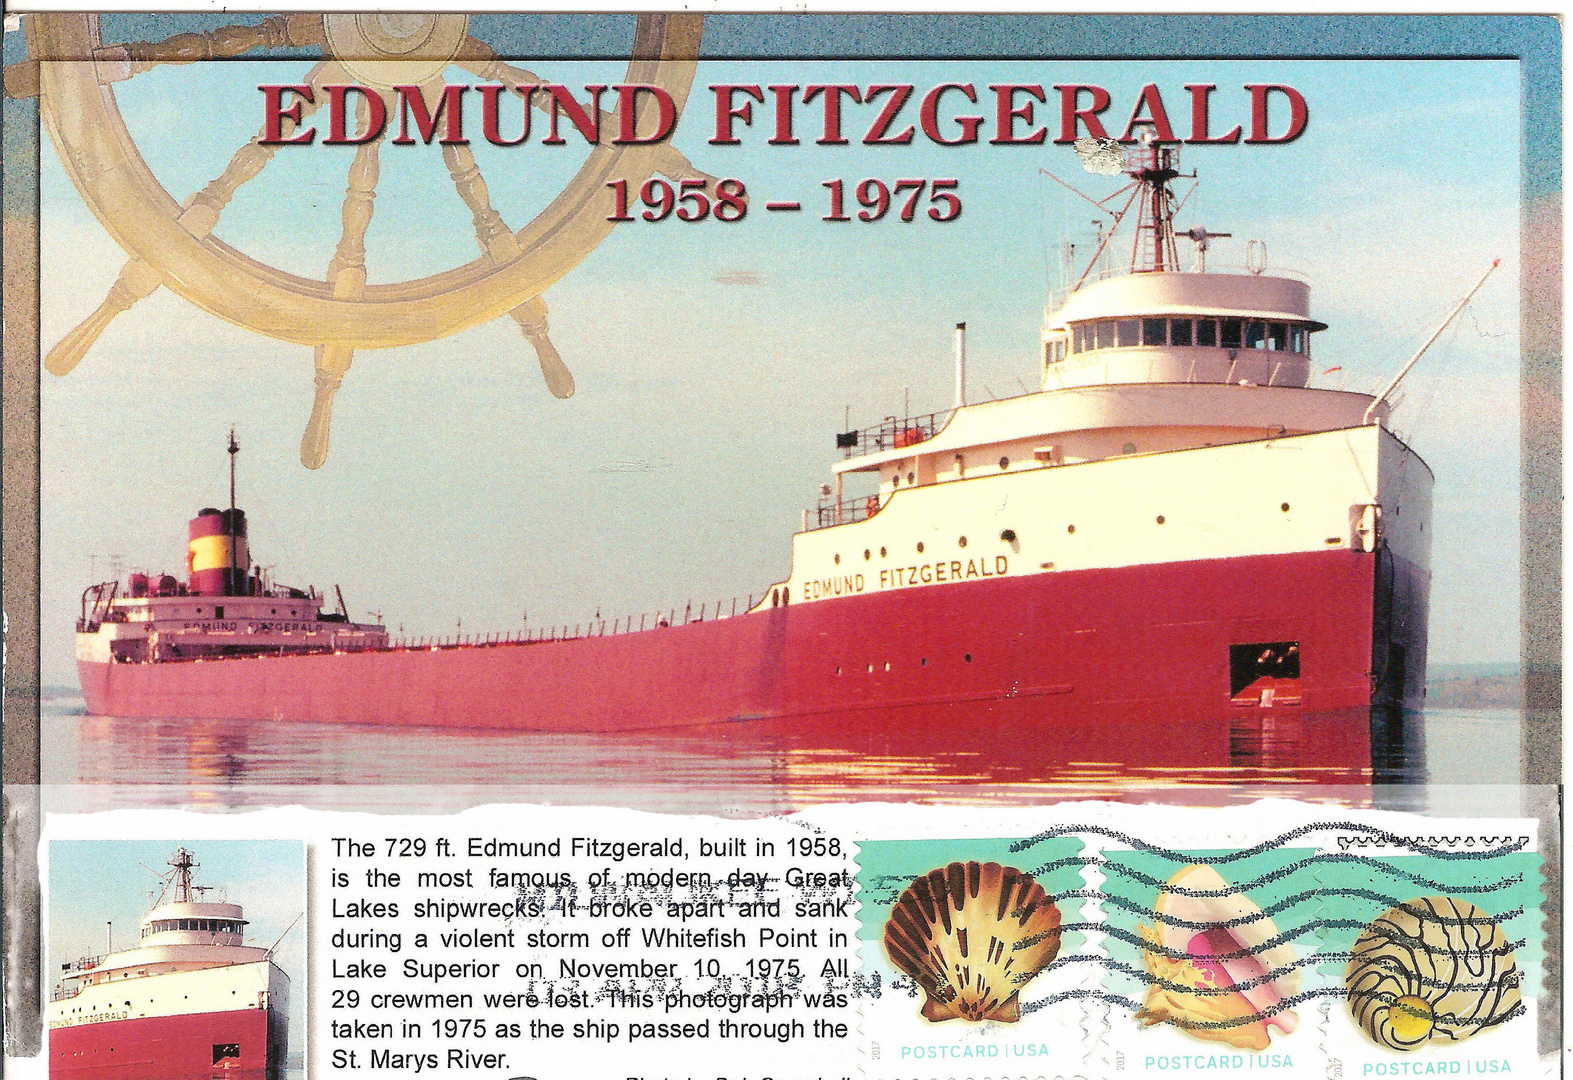 wie dazumal ... Motorschiff "EDMUND FITZGERALD"